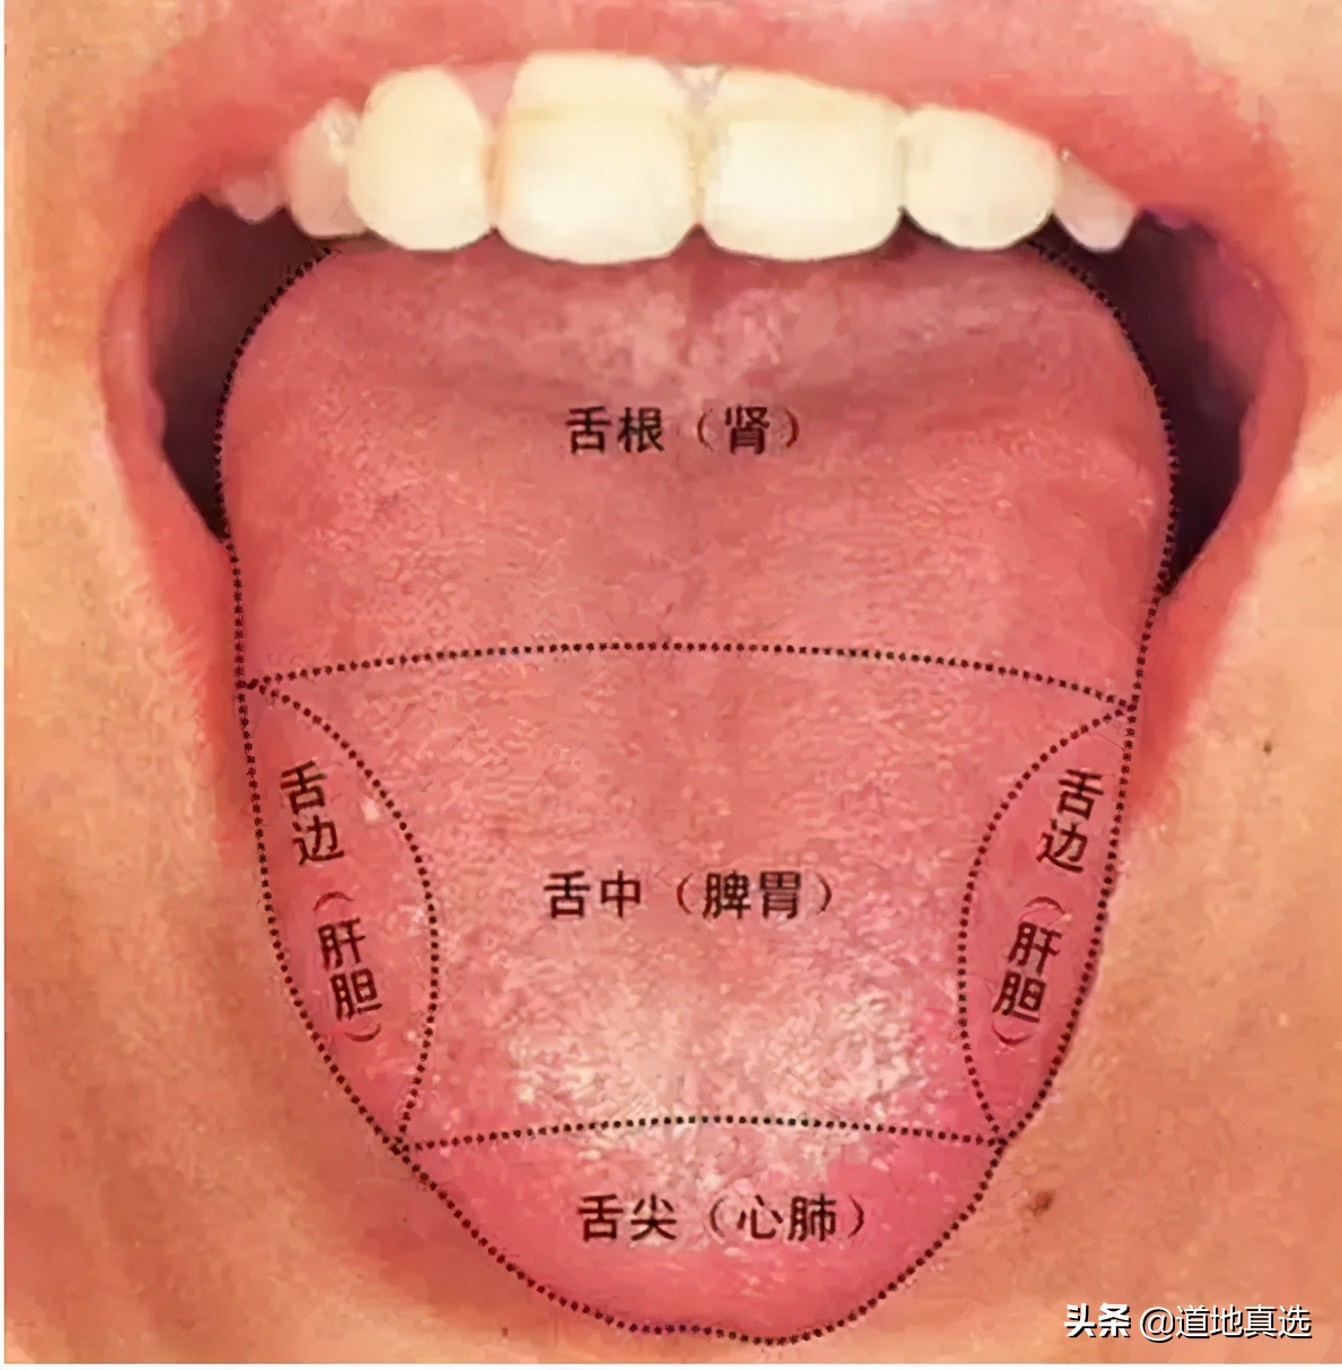 珍贵的舌诊图谱,看舌头知健康,人手一份!你也能快速识别疾病